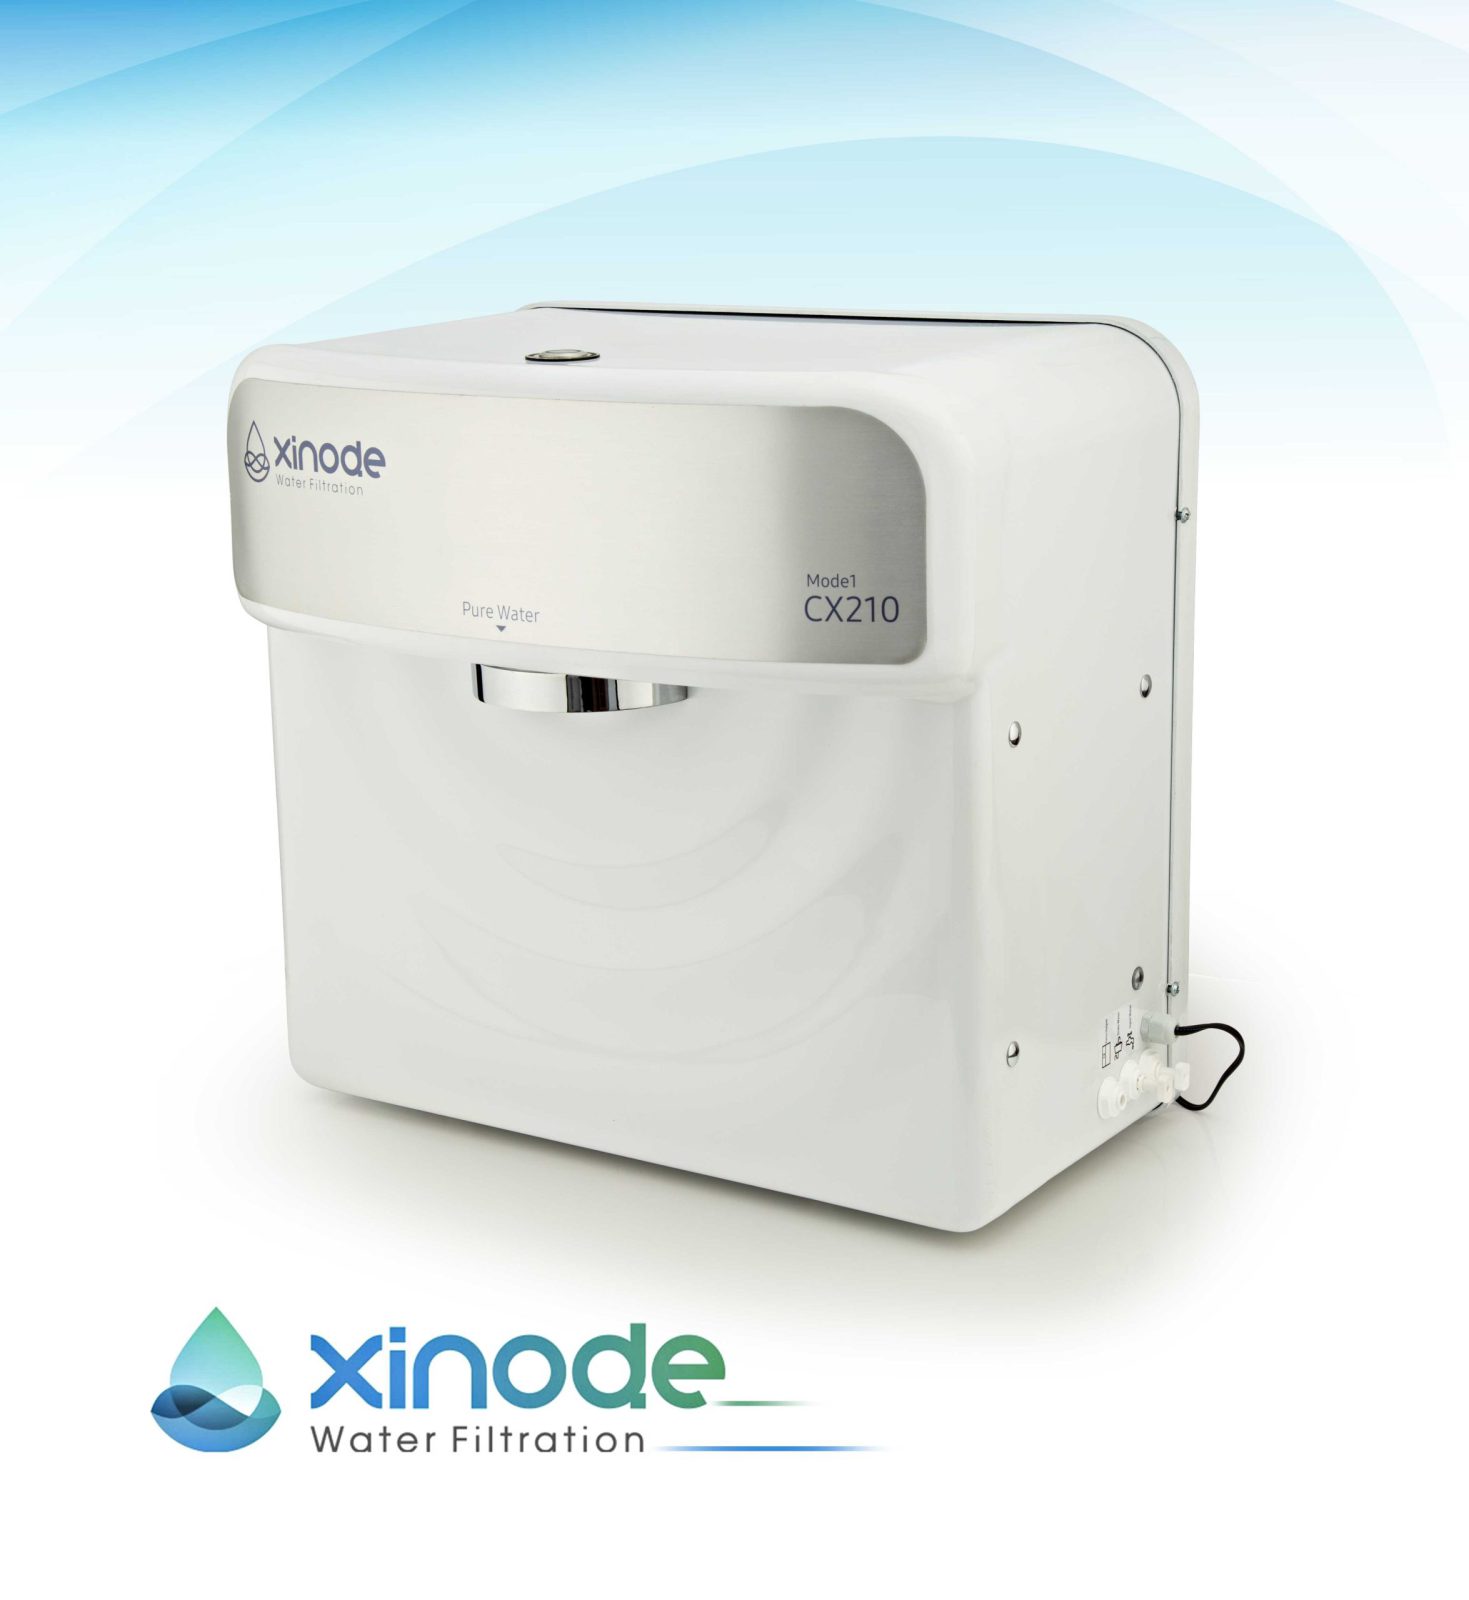 دستگاه تصفیه آب رومیزی زینود Xinode مدل CX210